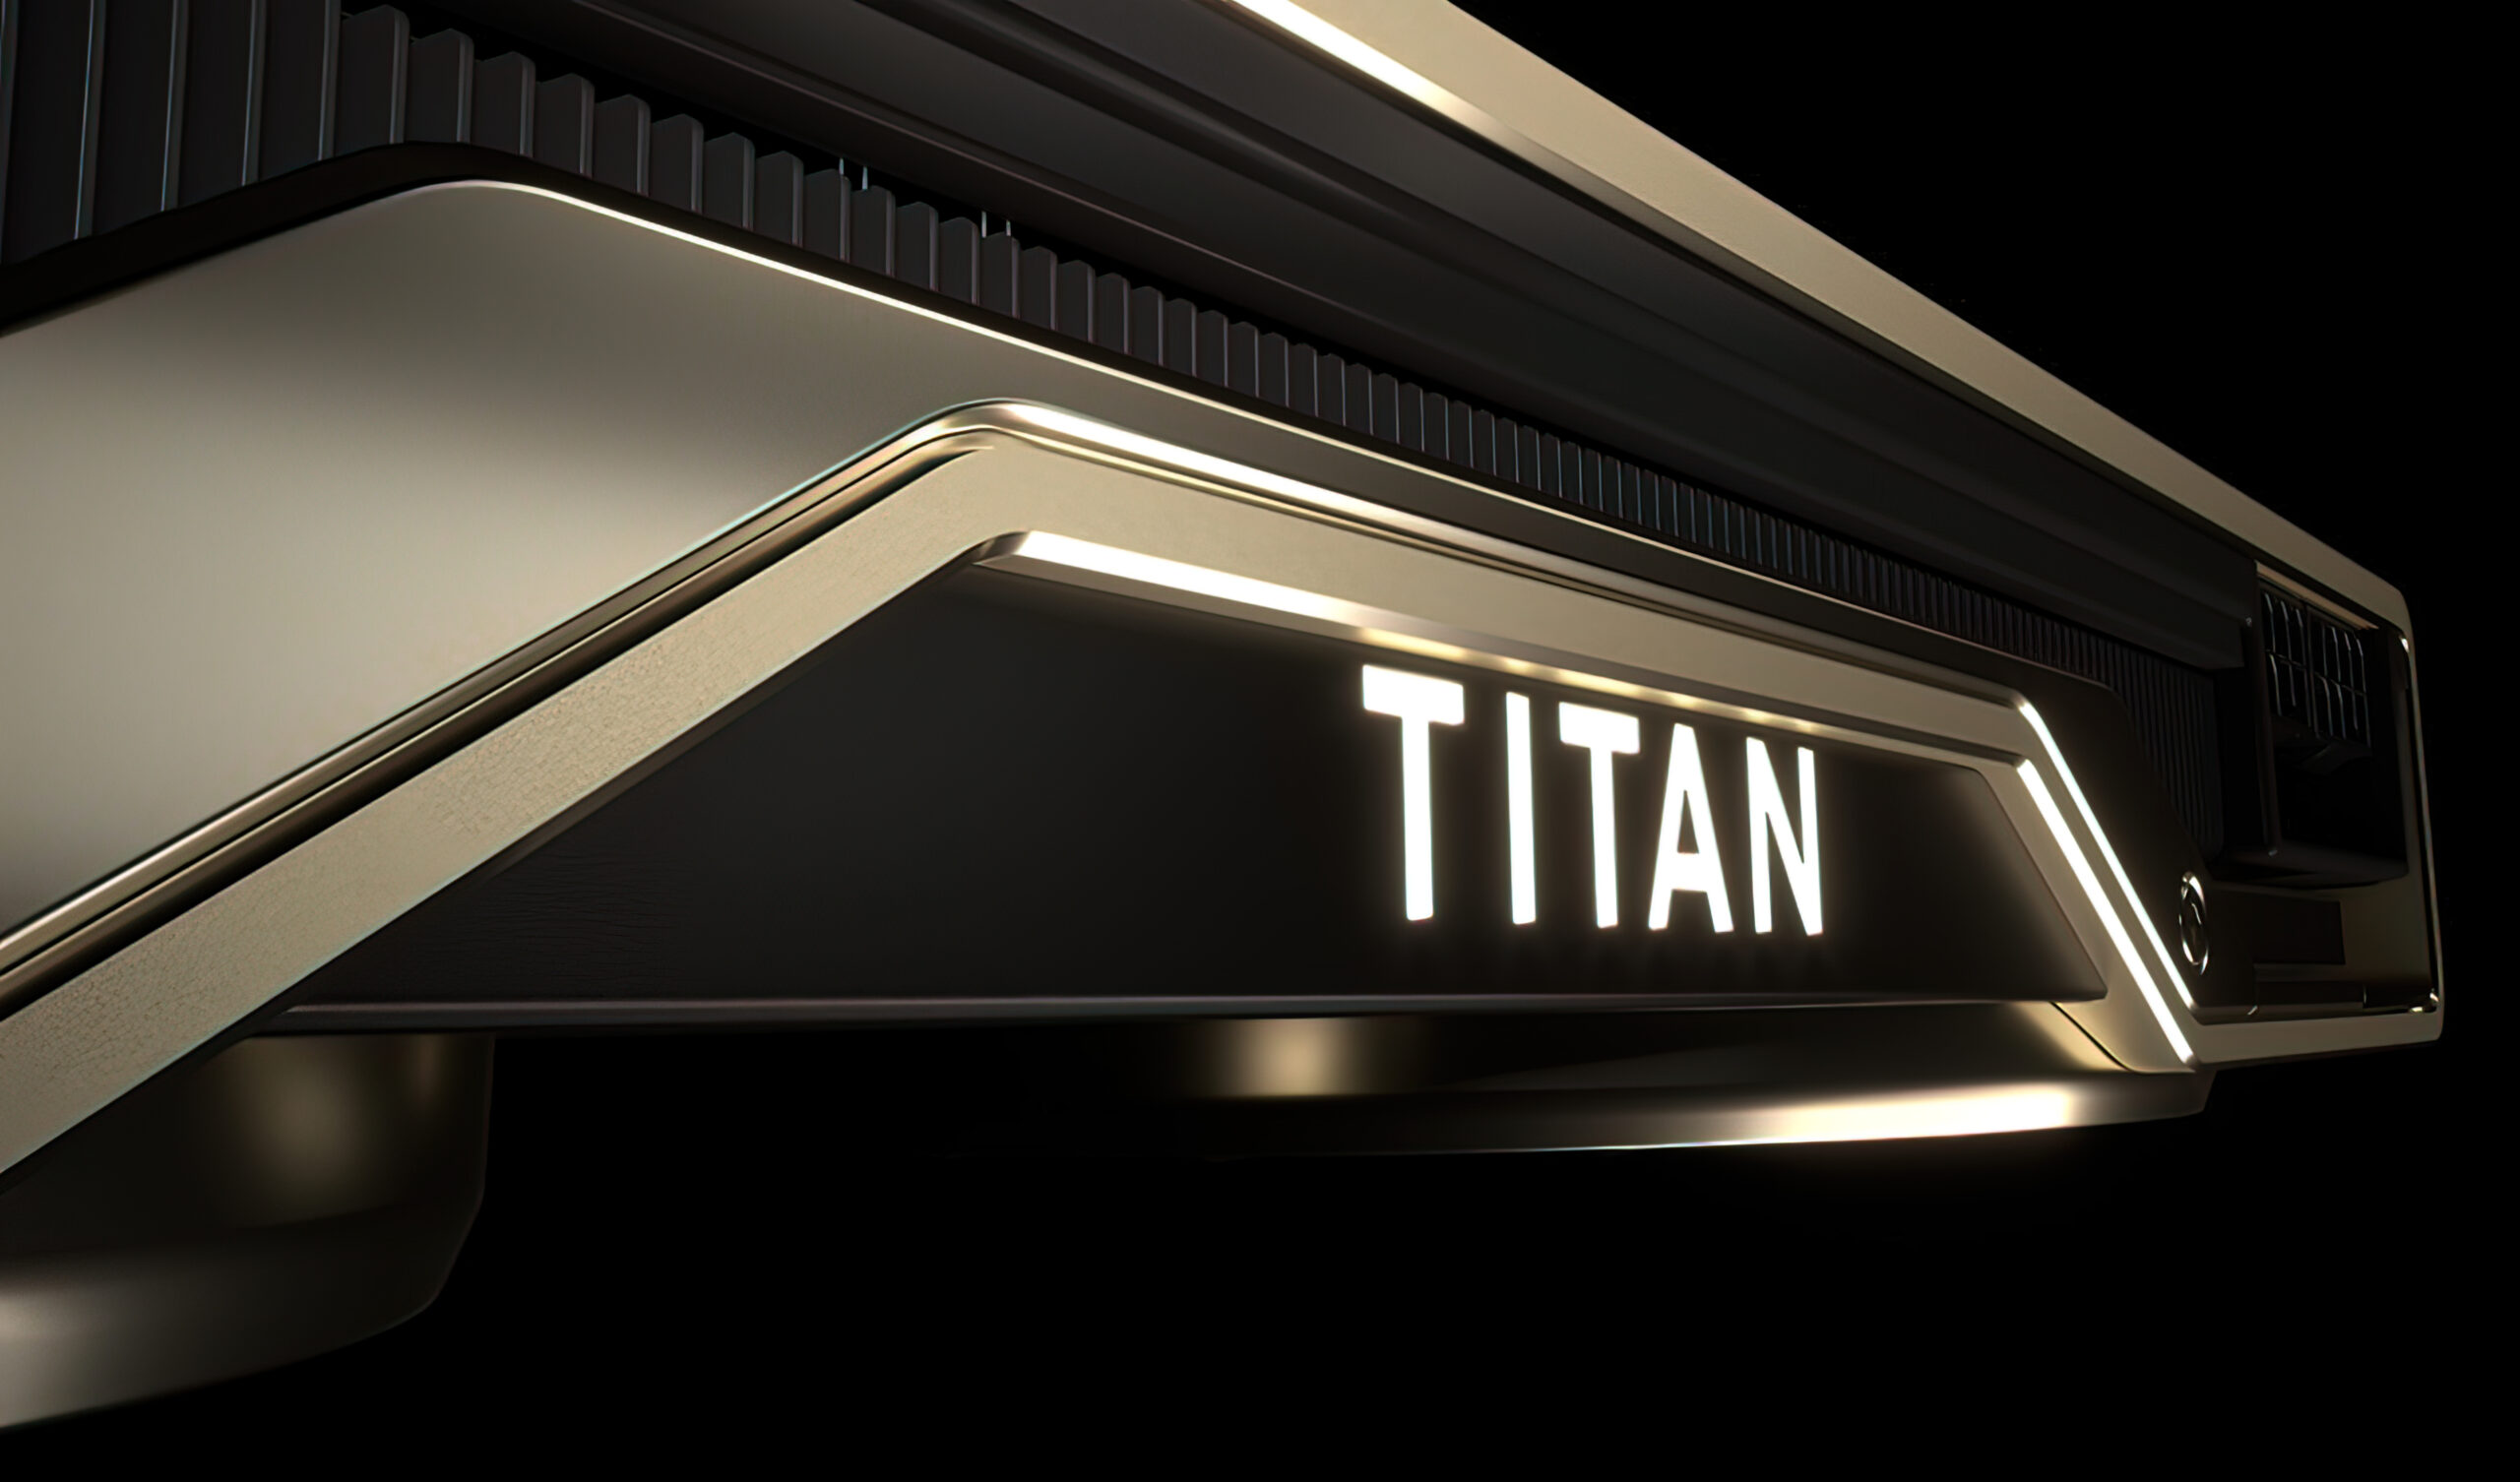 У NVIDIA есть новая видеокарта серии Titan, но её запуск под большим вопросом